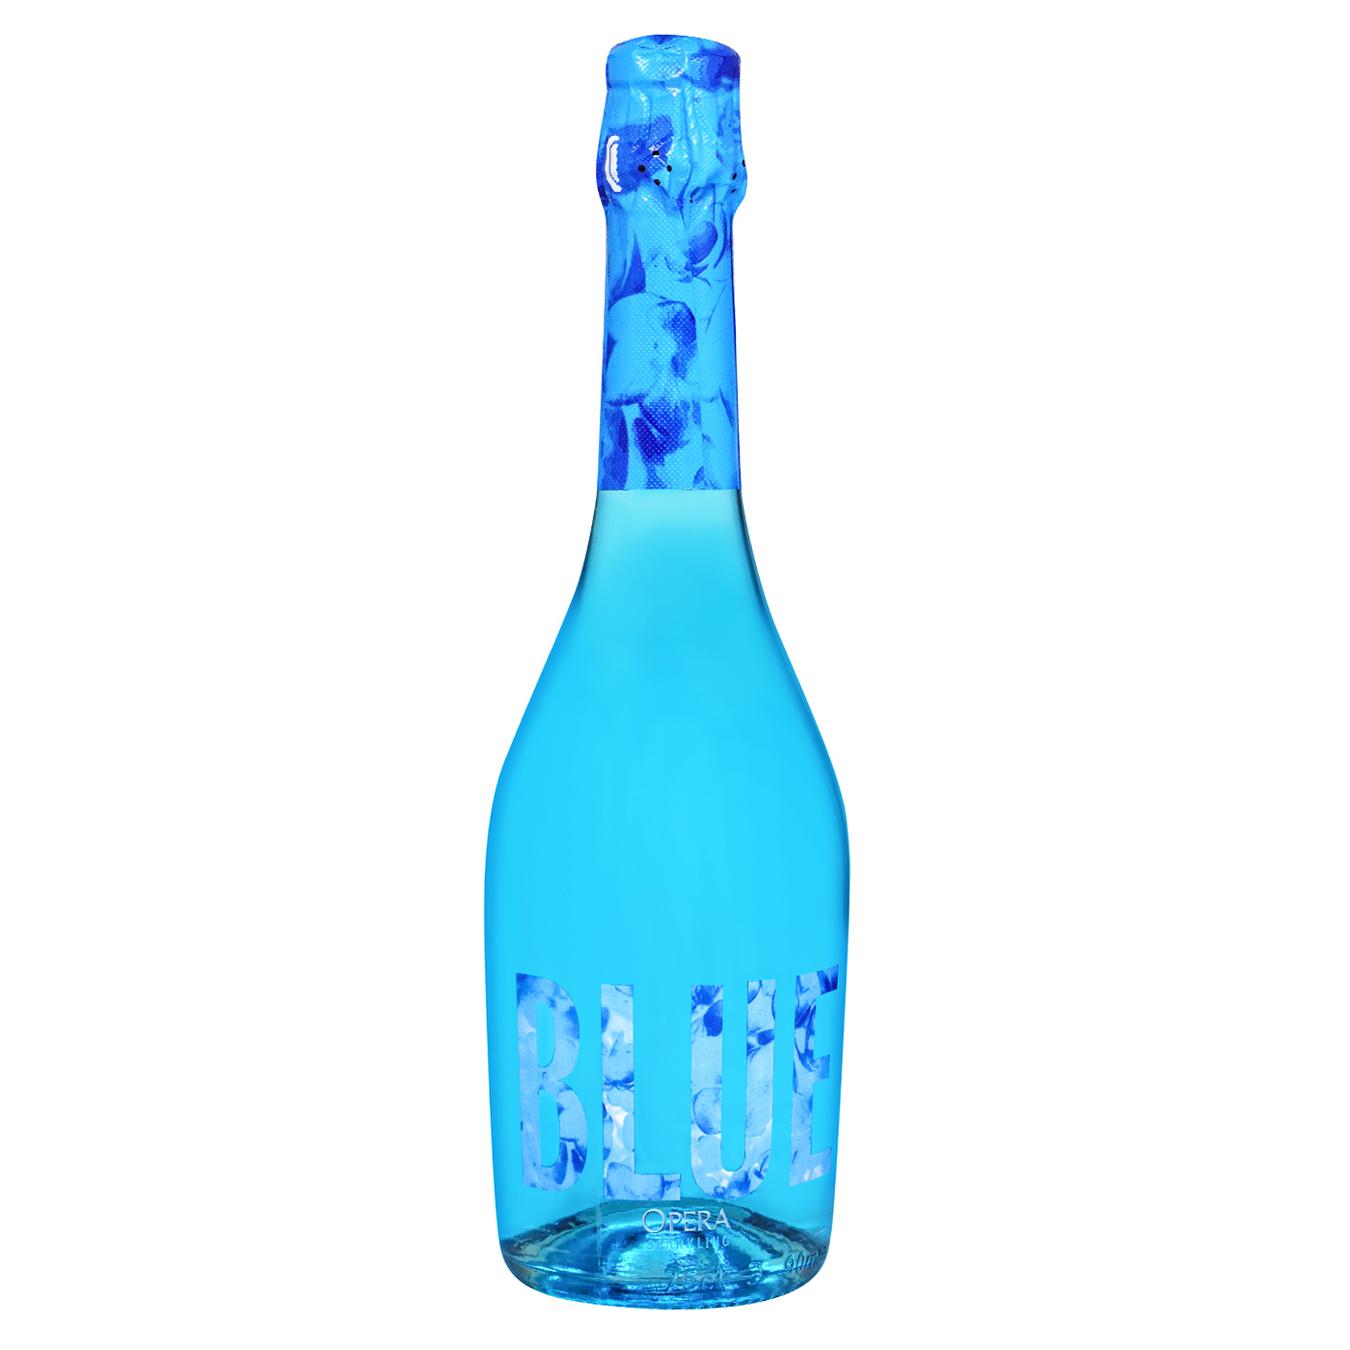 Sparkling wine drink Opera Charmat blue sweet 7% 0.75 l